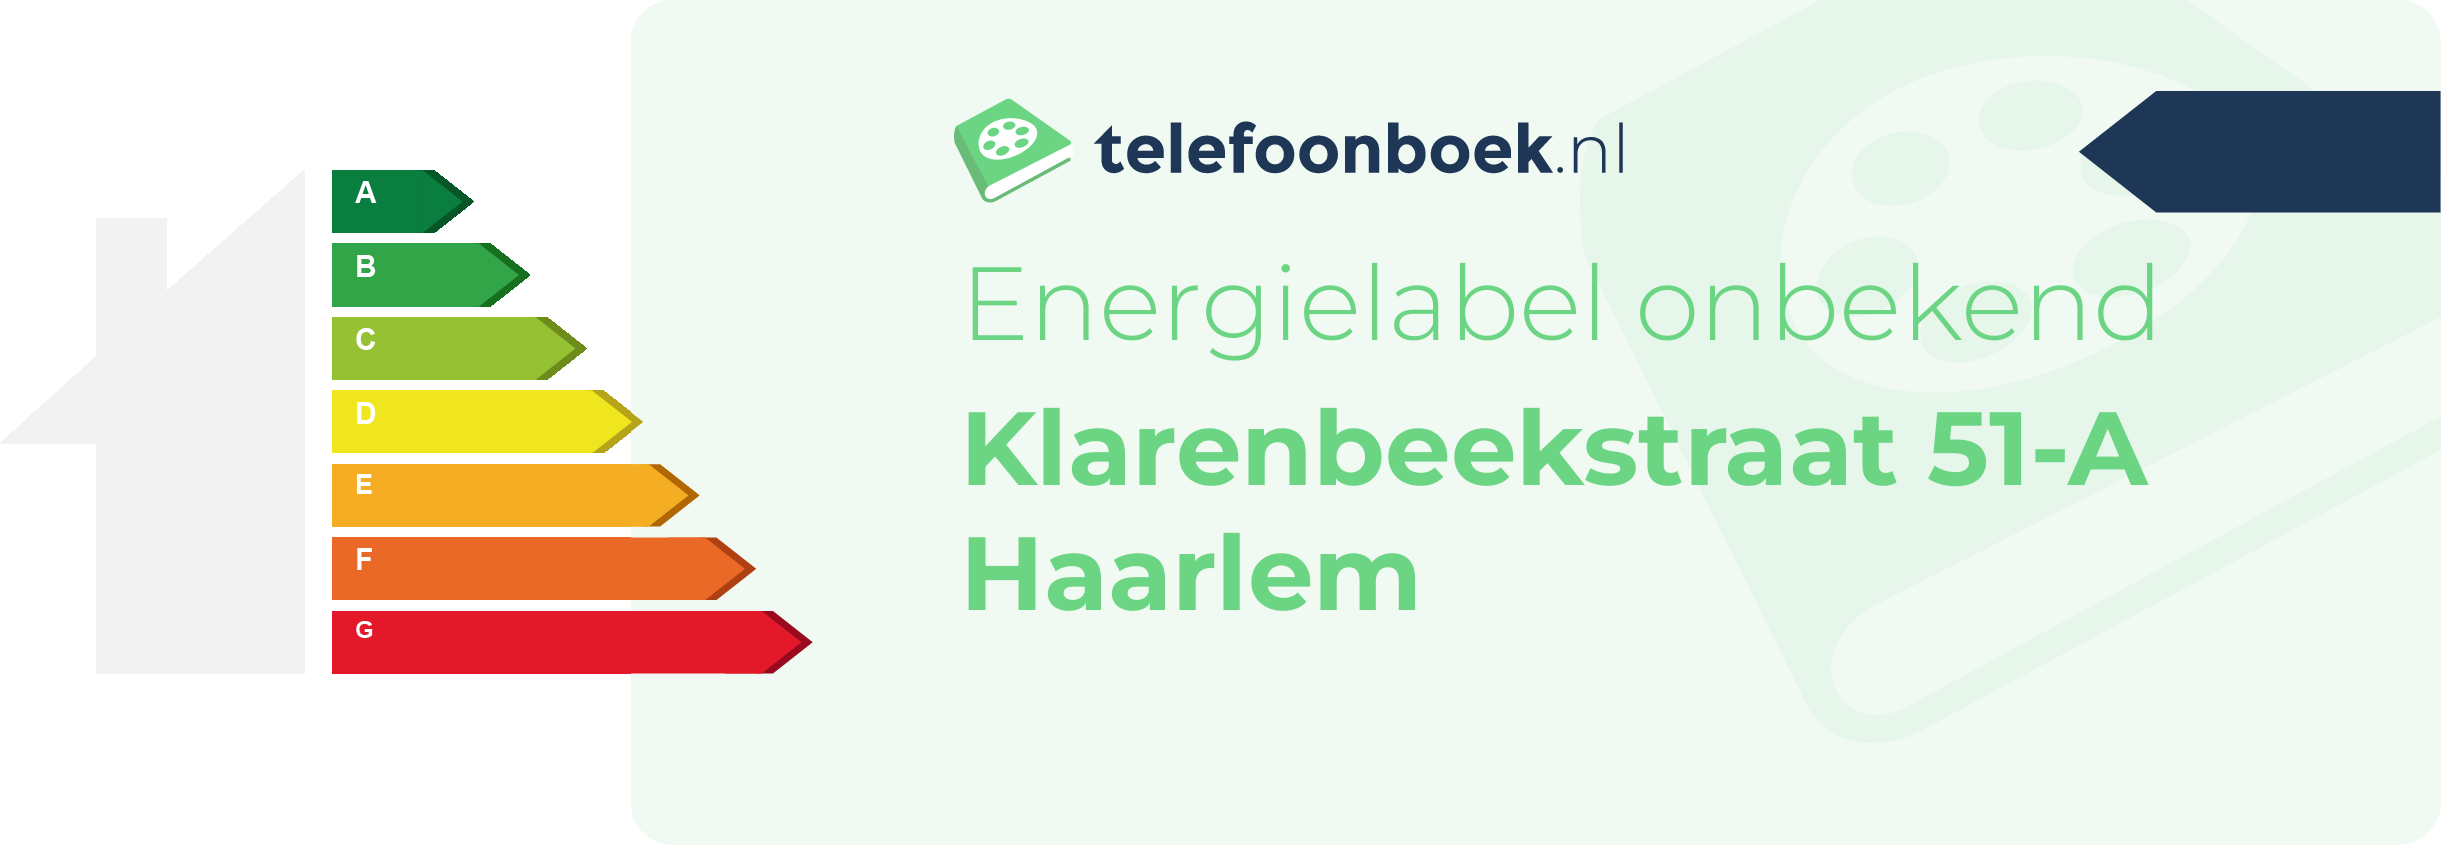 Energielabel Klarenbeekstraat 51-A Haarlem